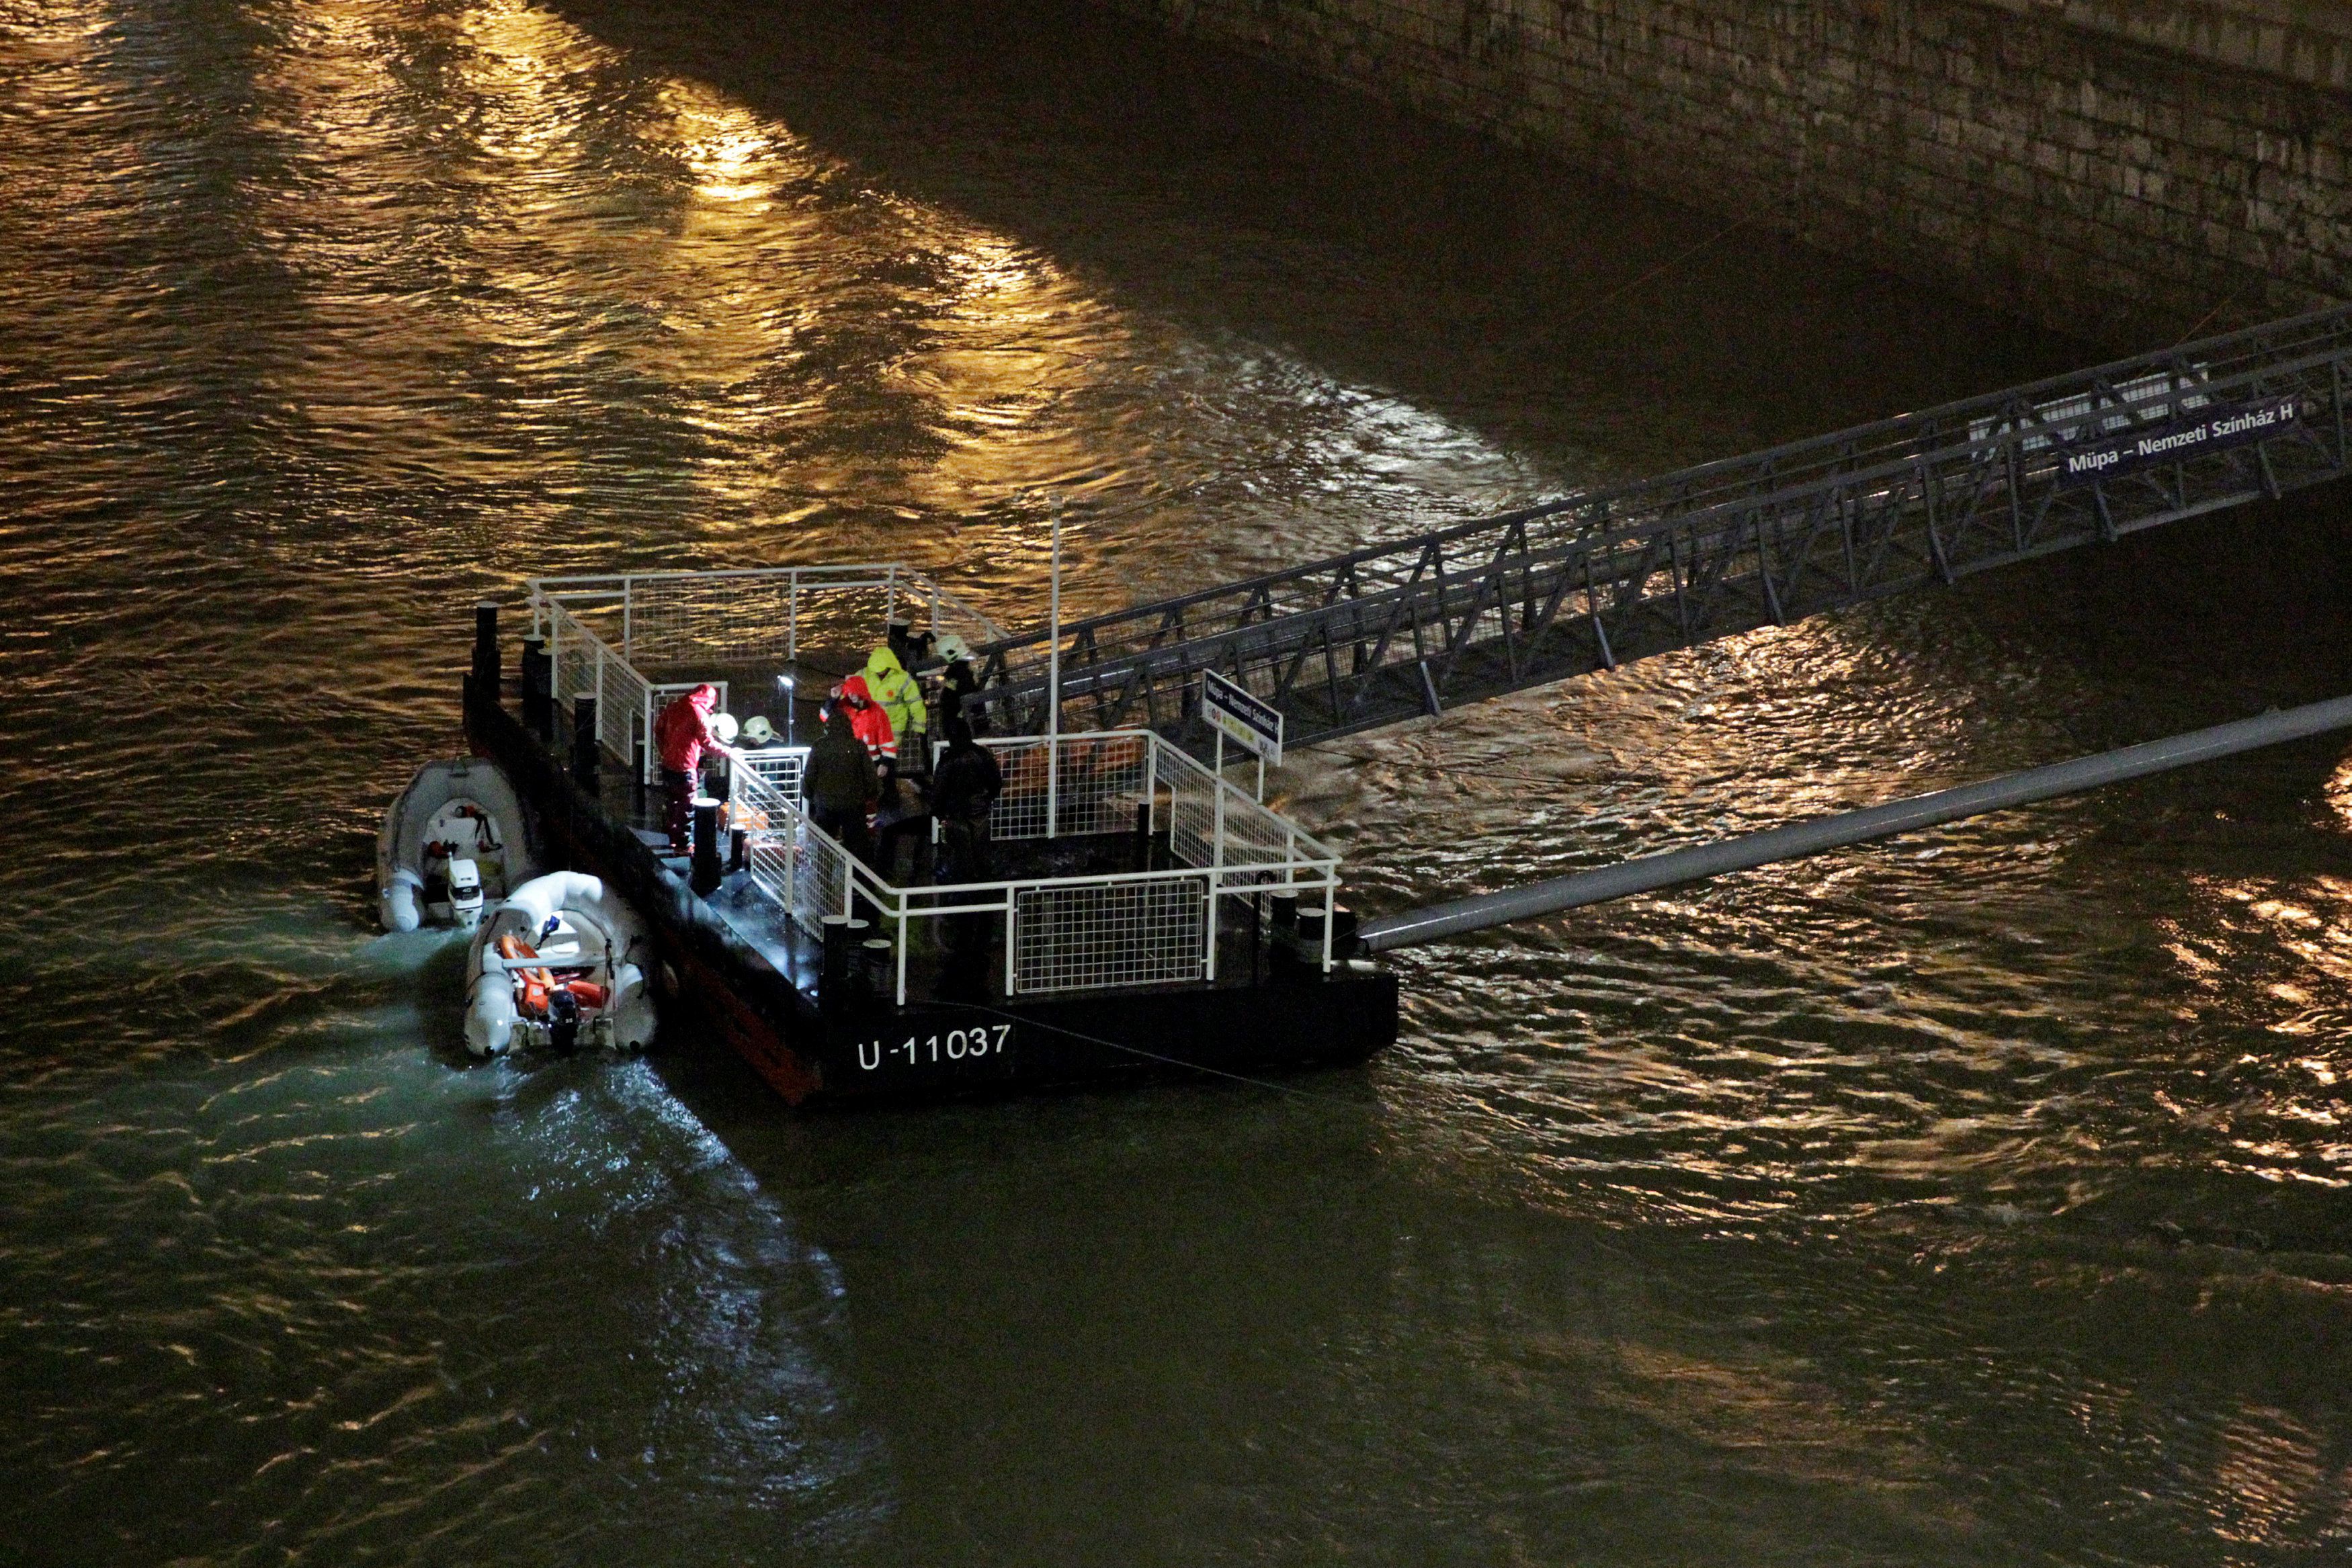 Lật tàu du lịch trên sông Đa-nuýp ở Hungary, 7 người chết, 19 người mất tích